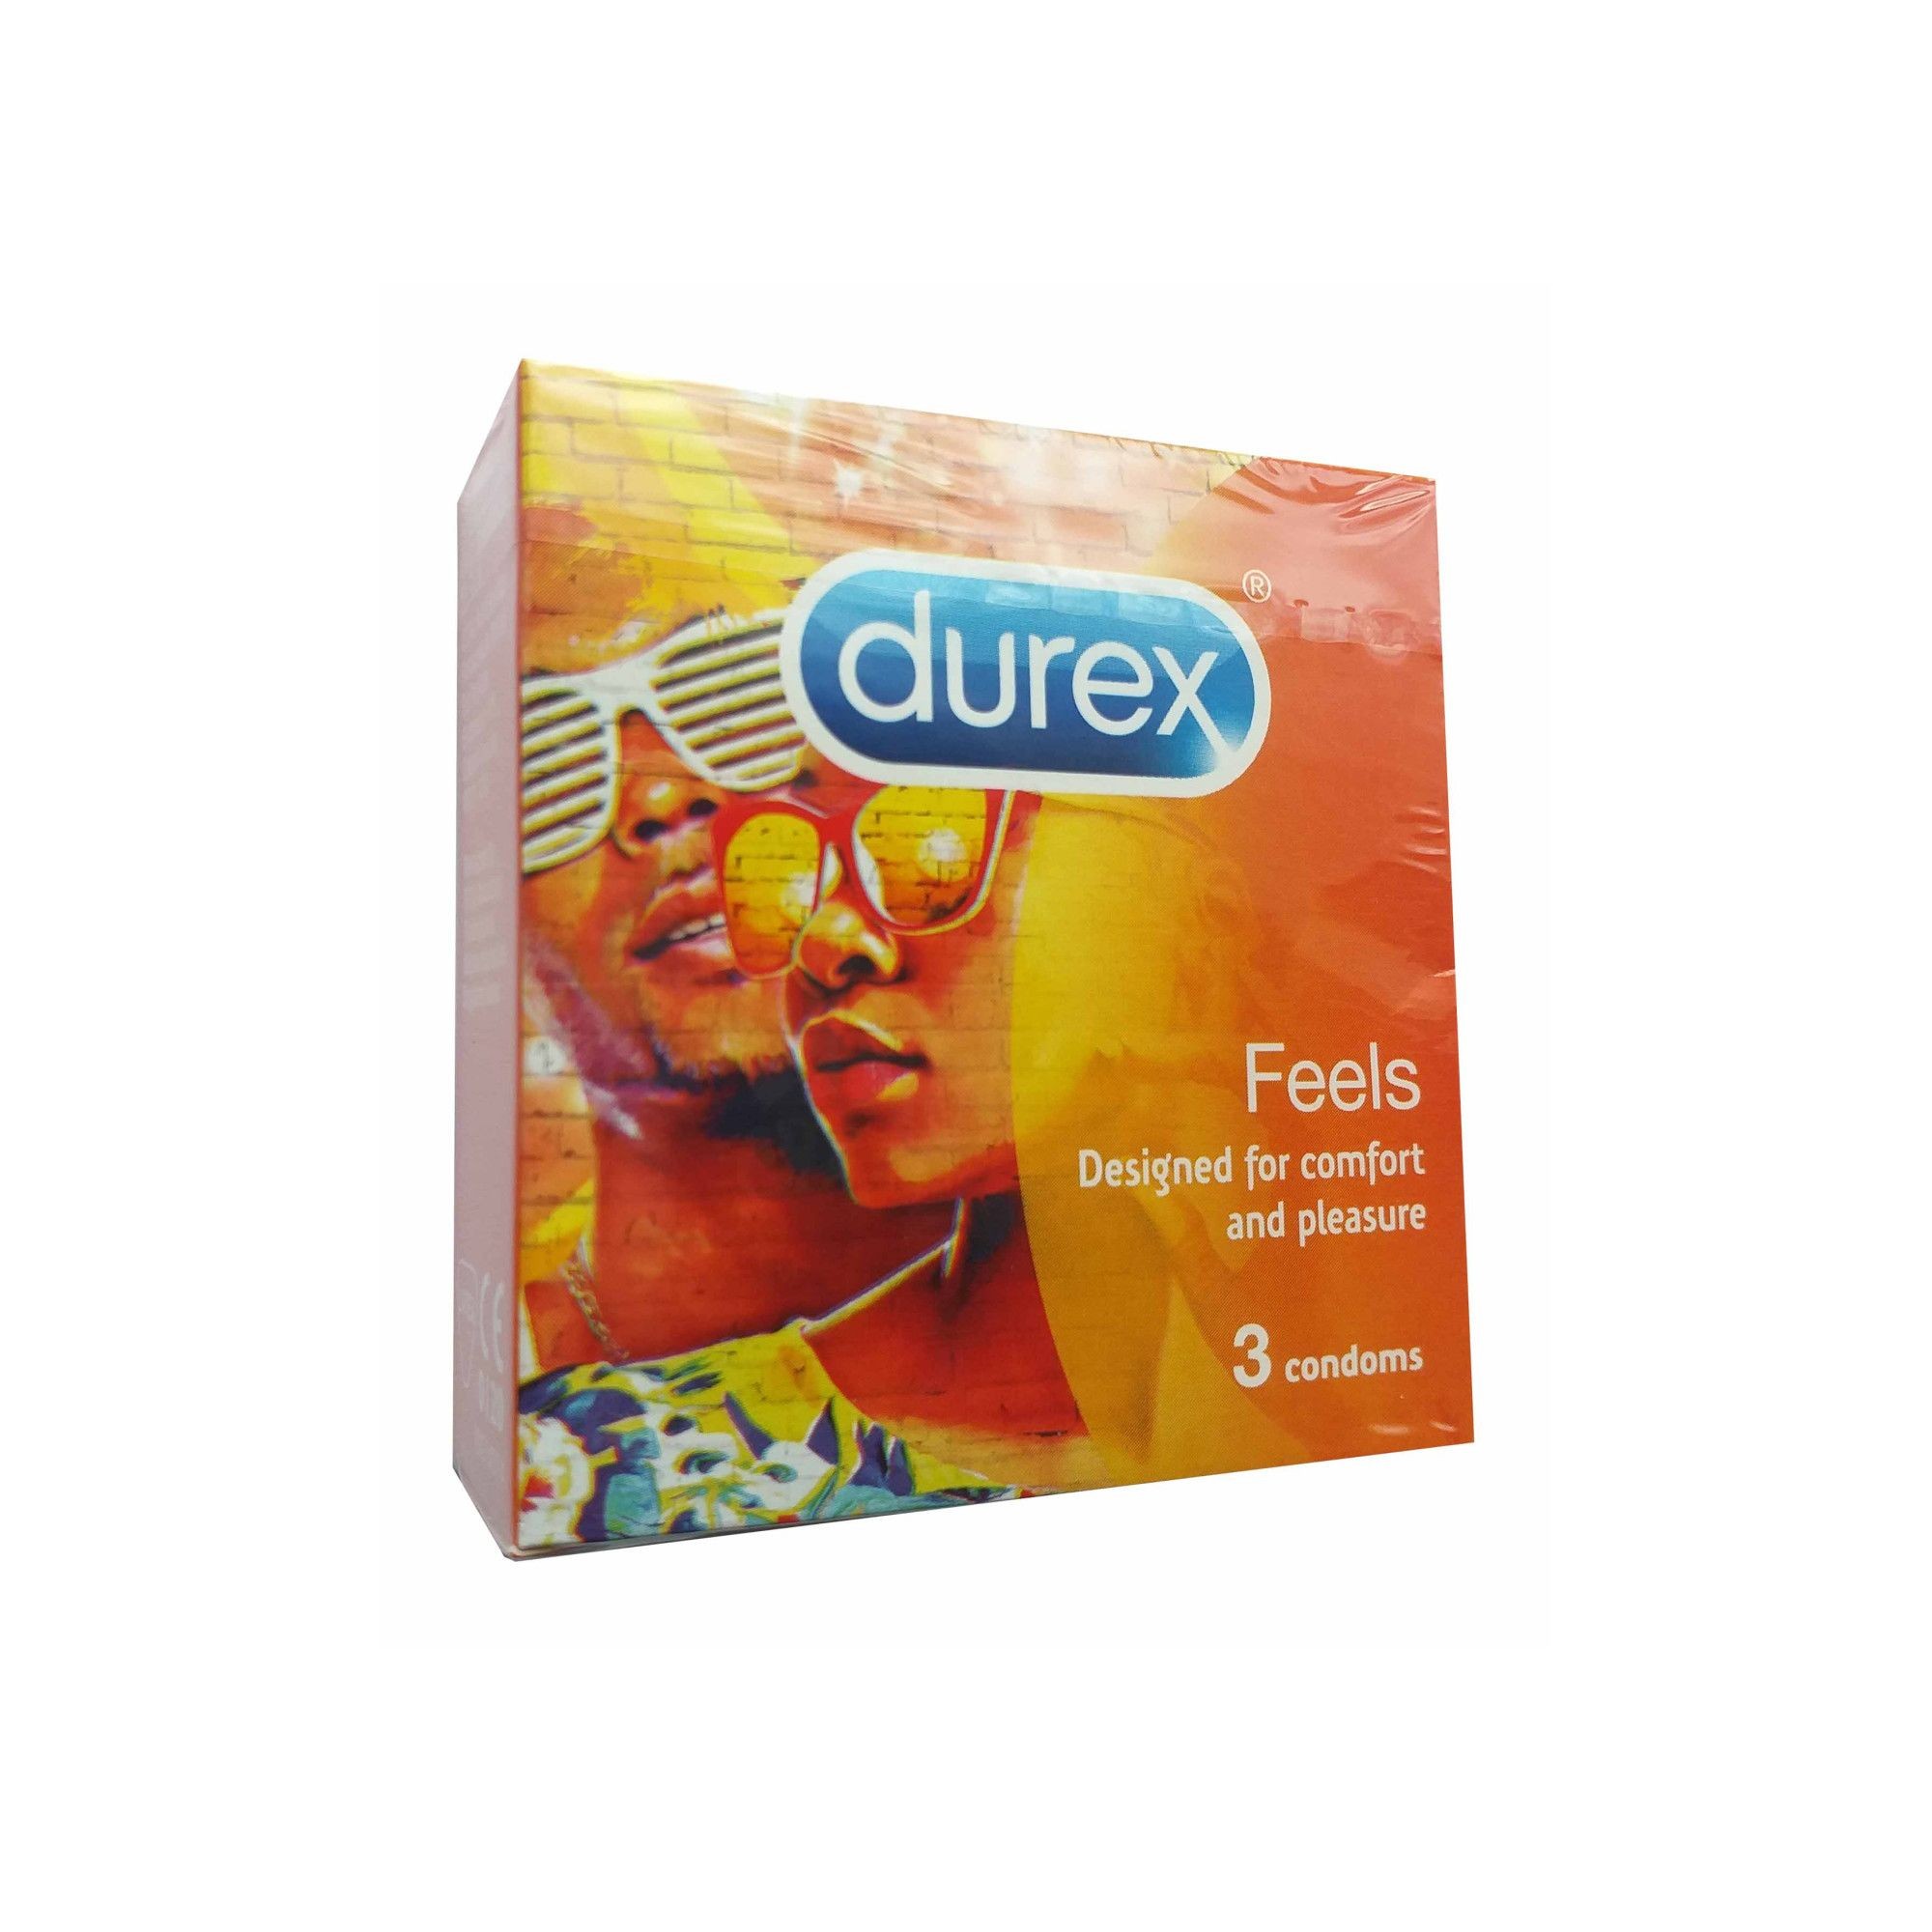 Contracepție - DUREX FEELS 3 BUC, axafarm.ro